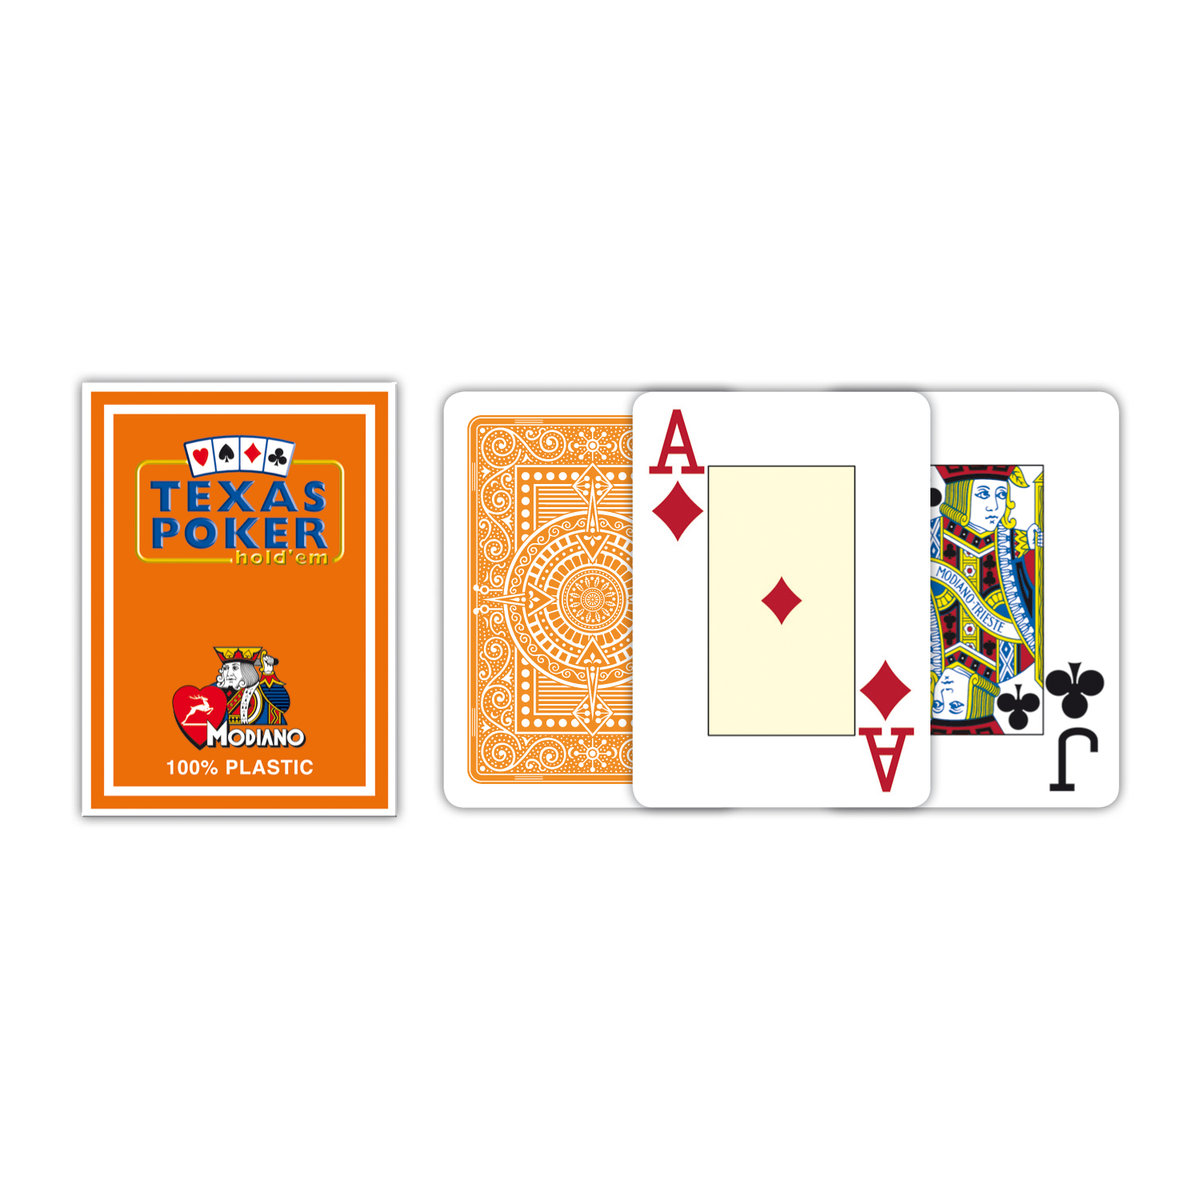 Modiano, karty Texas Poker Jumbo Index Plastic